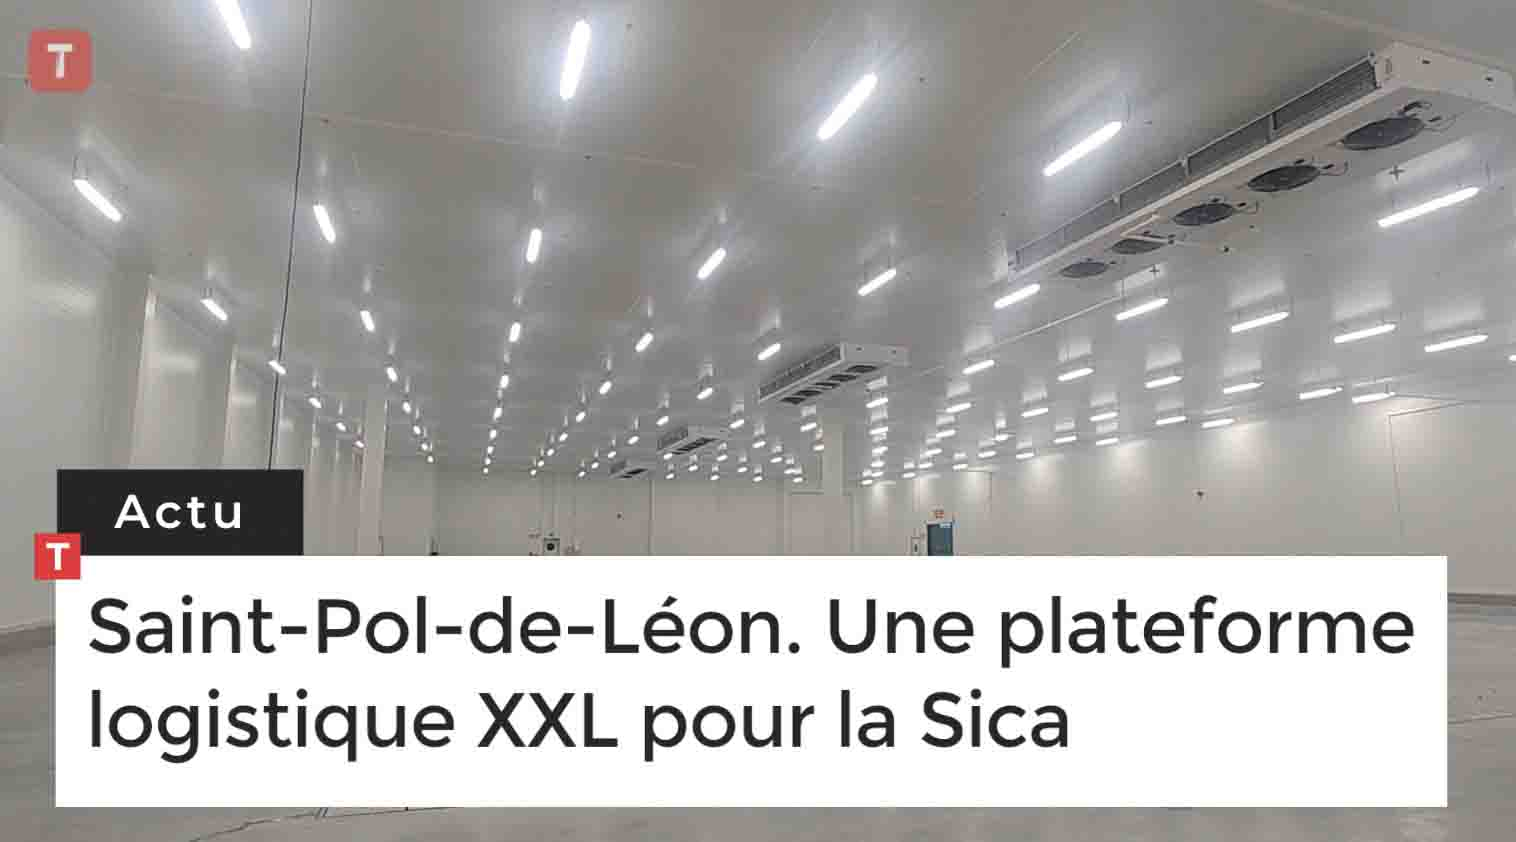 Saint-Pol-de-Léon. Une plateforme logistique XXL pour la Sica (Le Télégramme)